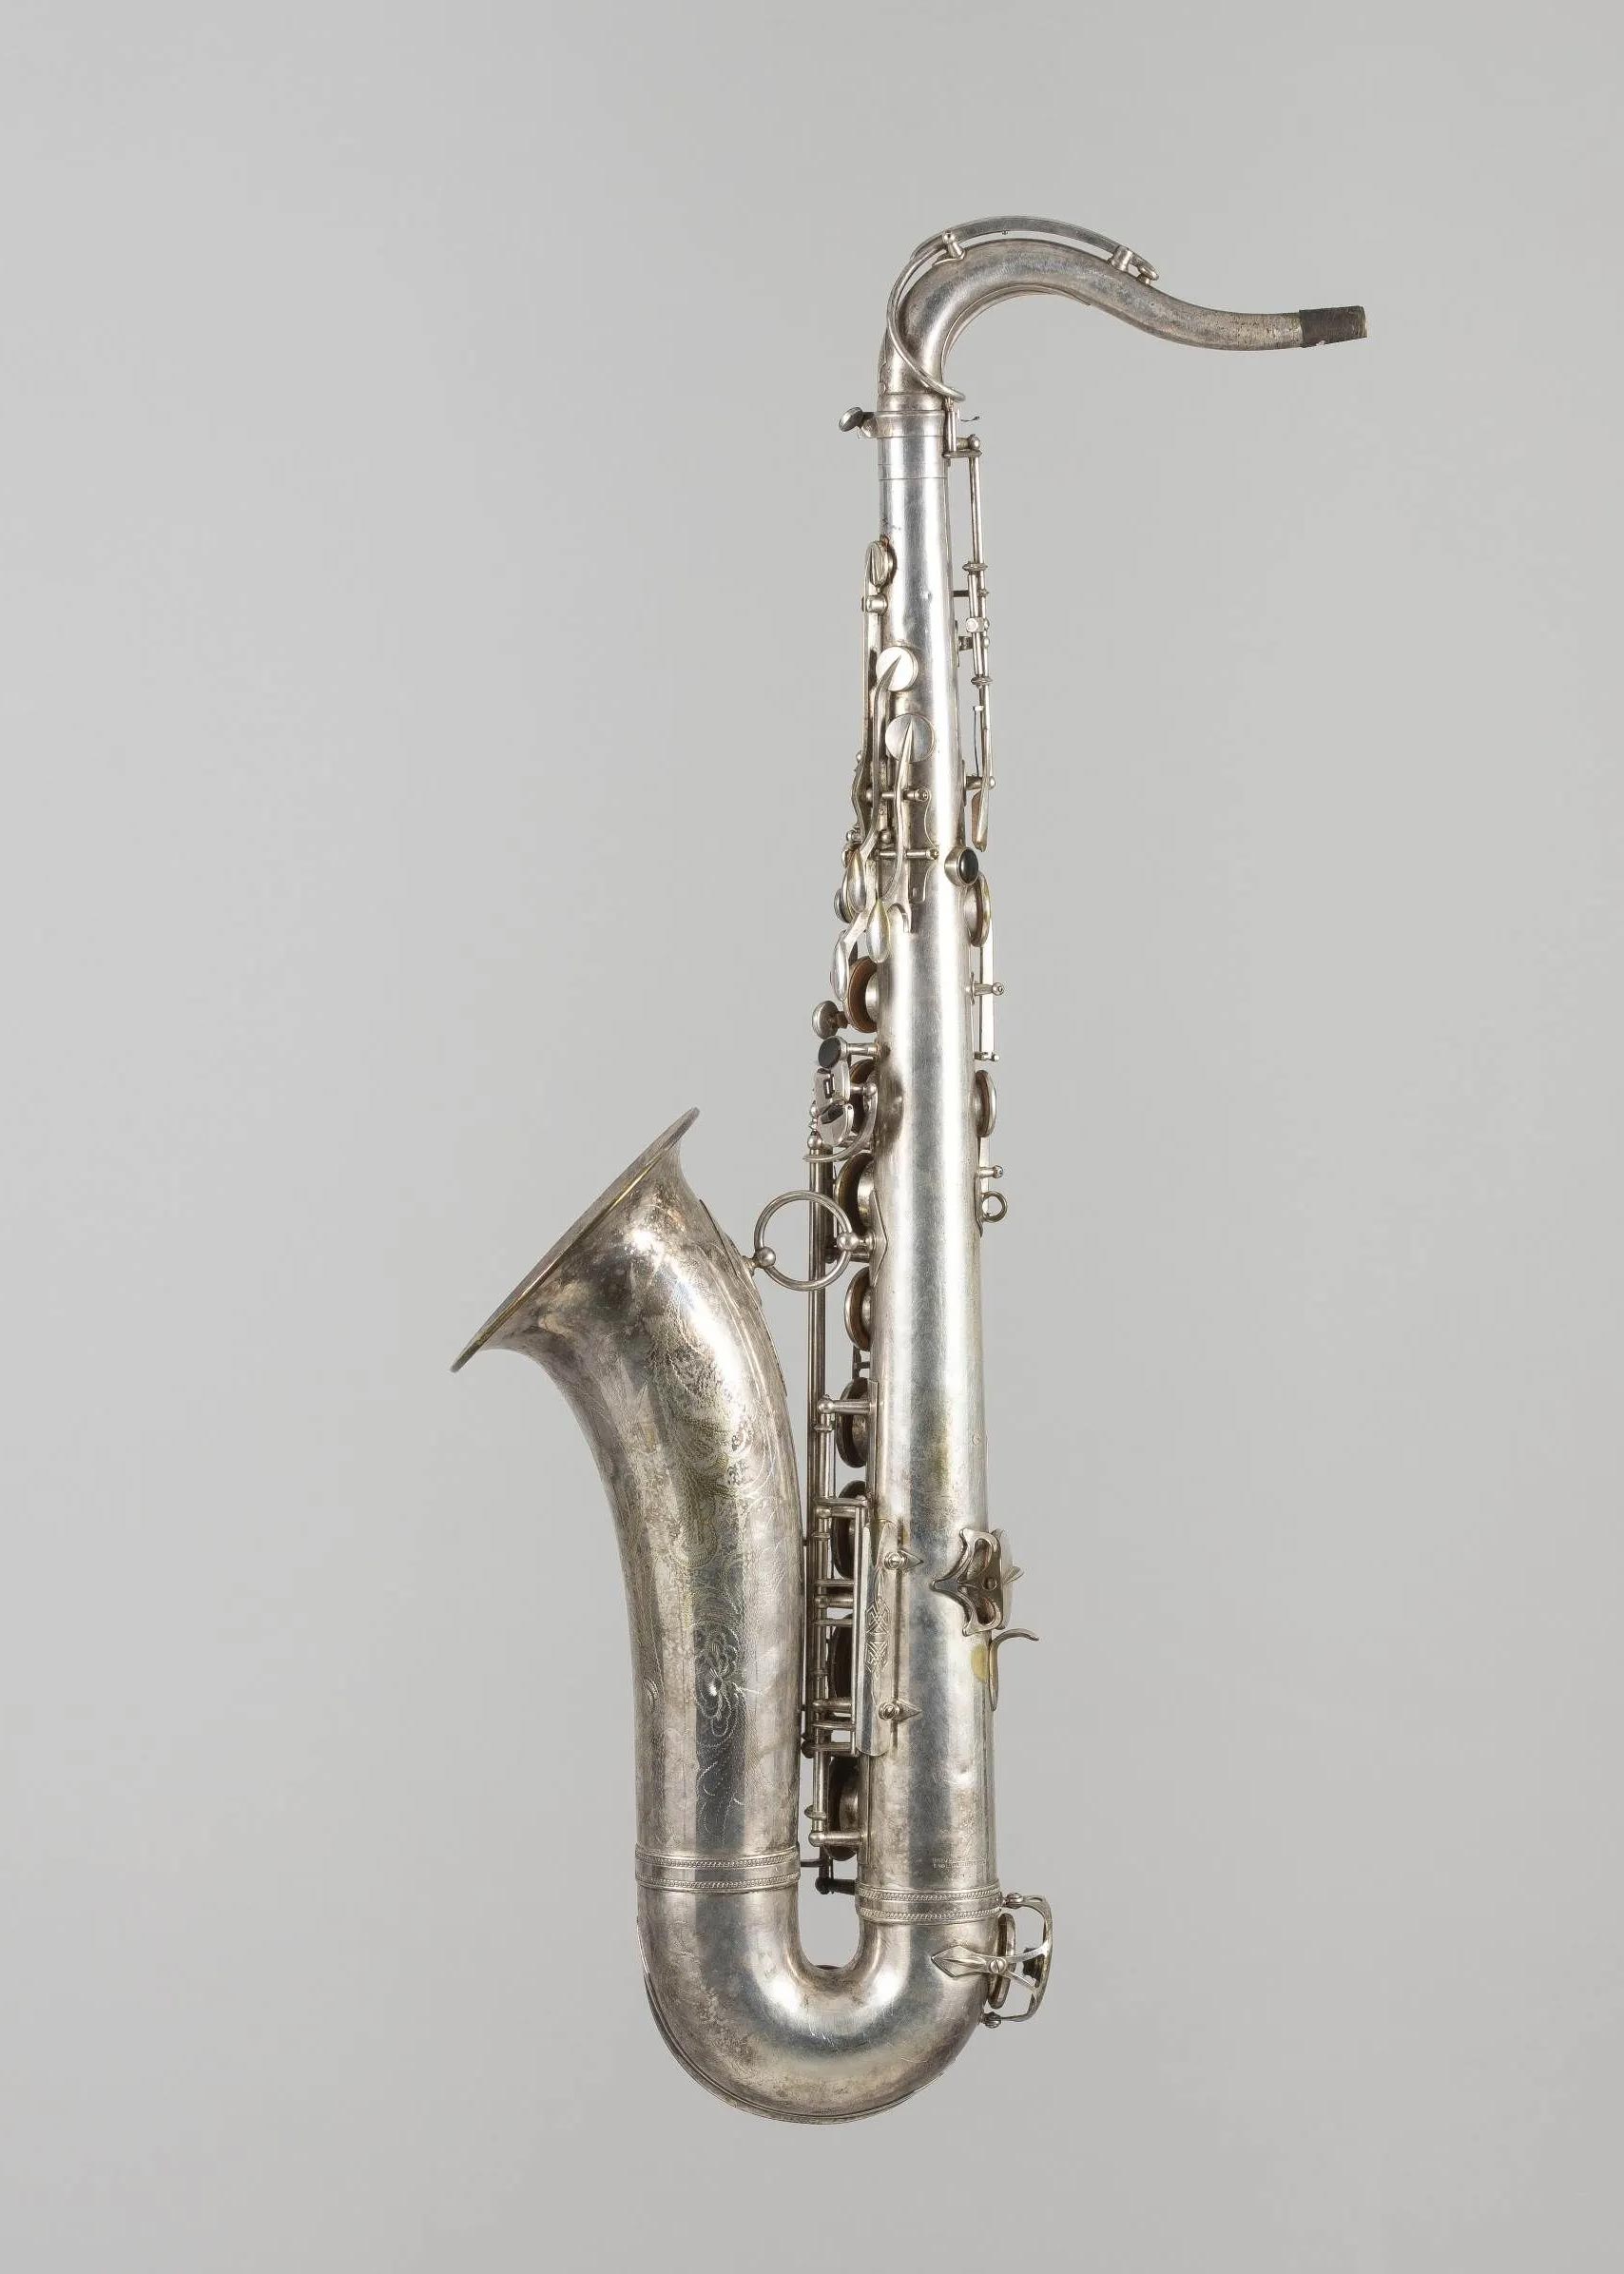 Saxophone ténor en métal argenté, pavillon gravé de SELMER modèle Balance Action vers 1945 Instrument mis en vente par Vichy Enchères le 7 novembre 2020 © C. Darbelet